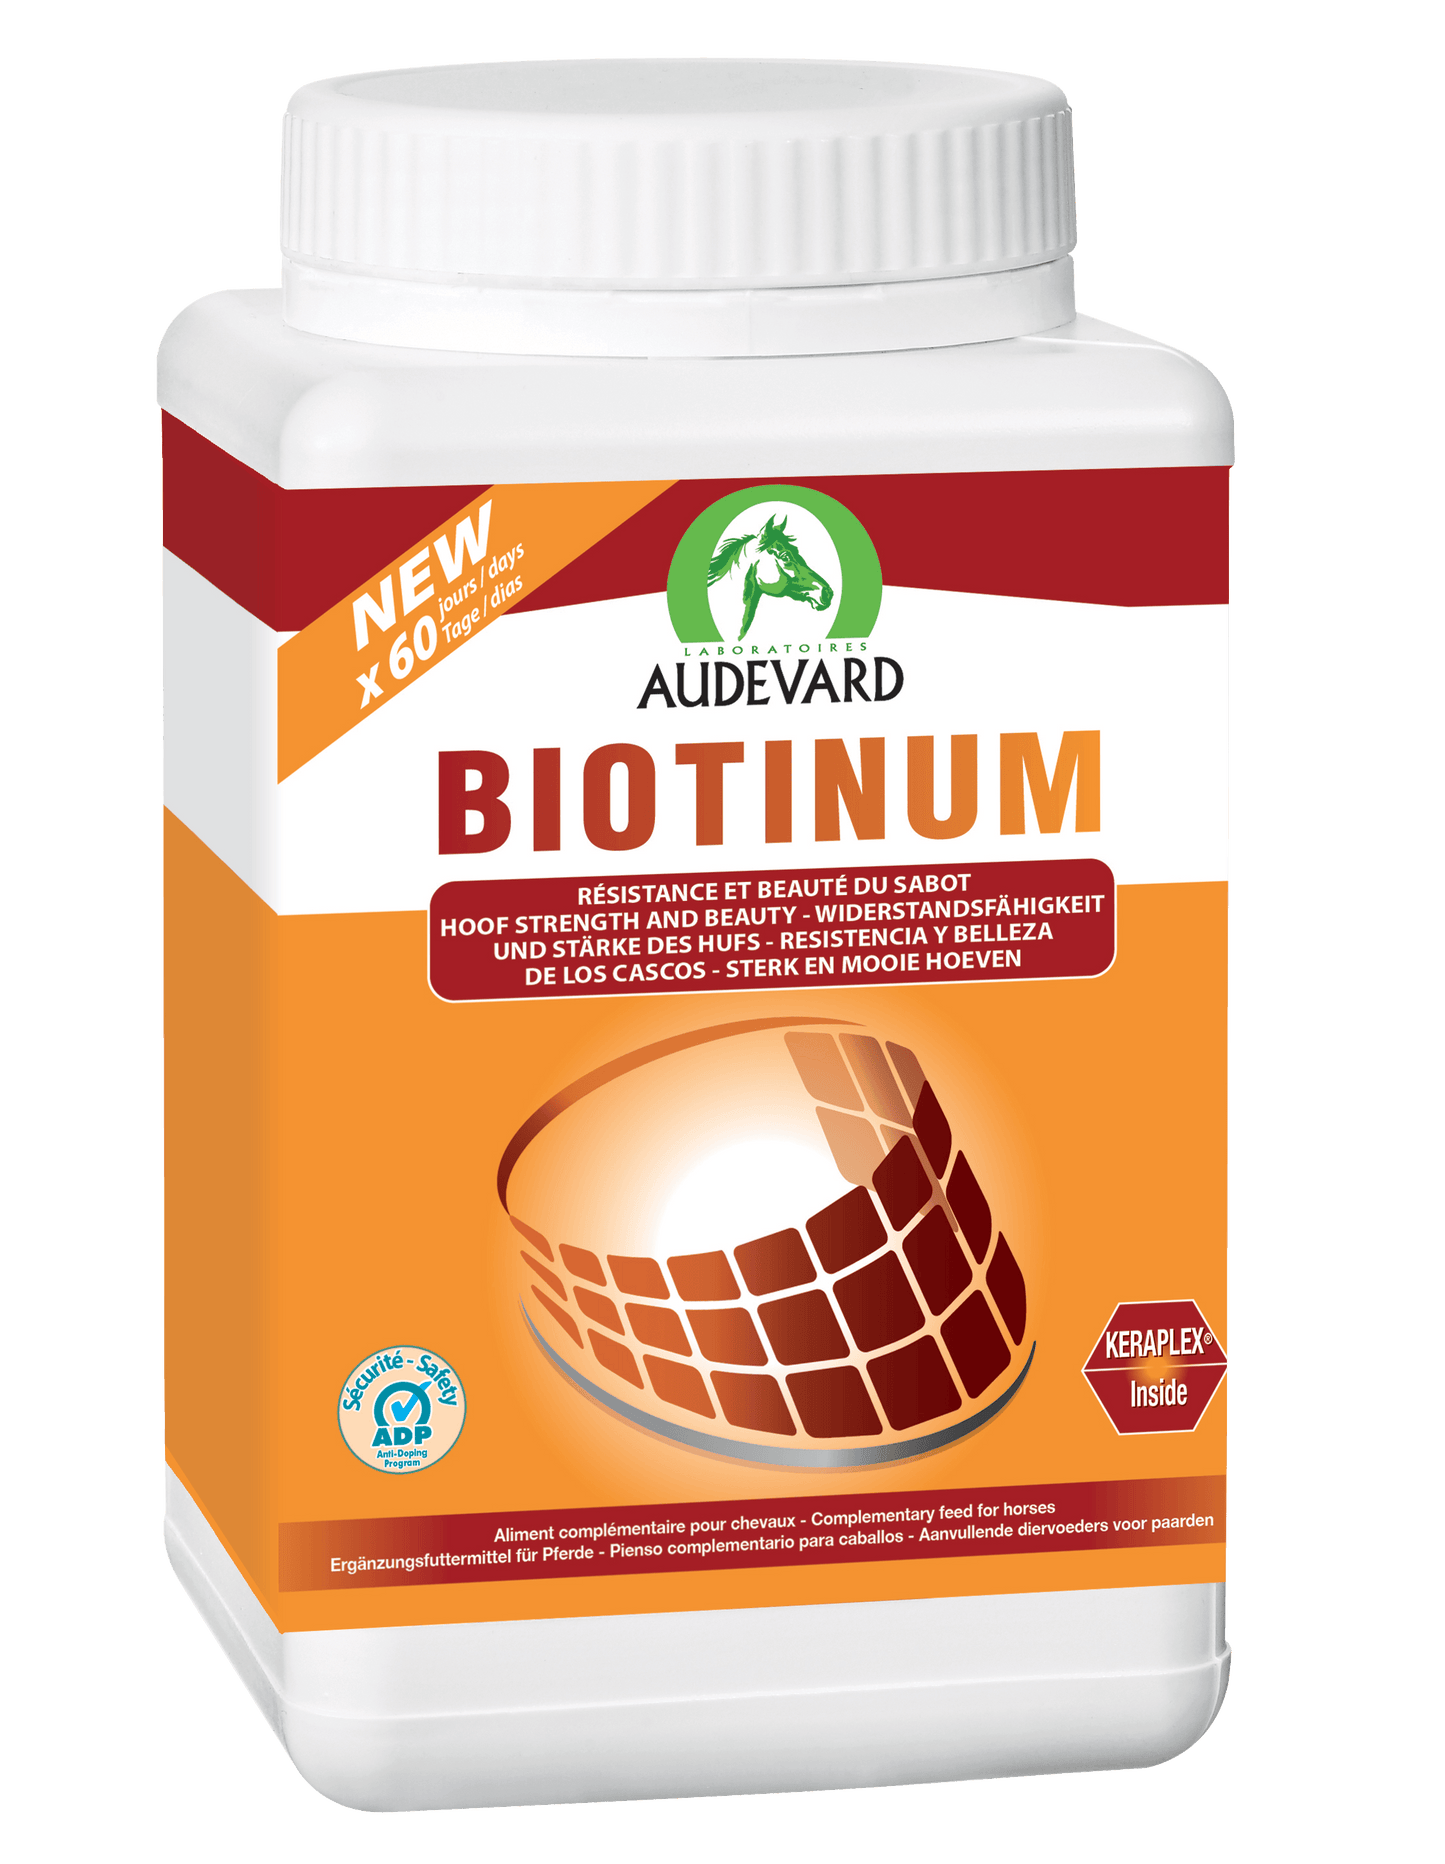 Biotinum - Audevard - Darreichungsform:Granulat, Ergänzungsfuttermittel:Huf, Hersteller:Audevard, Tierart:Pferd - Marigin AG Onlineshop für Tierbedarf